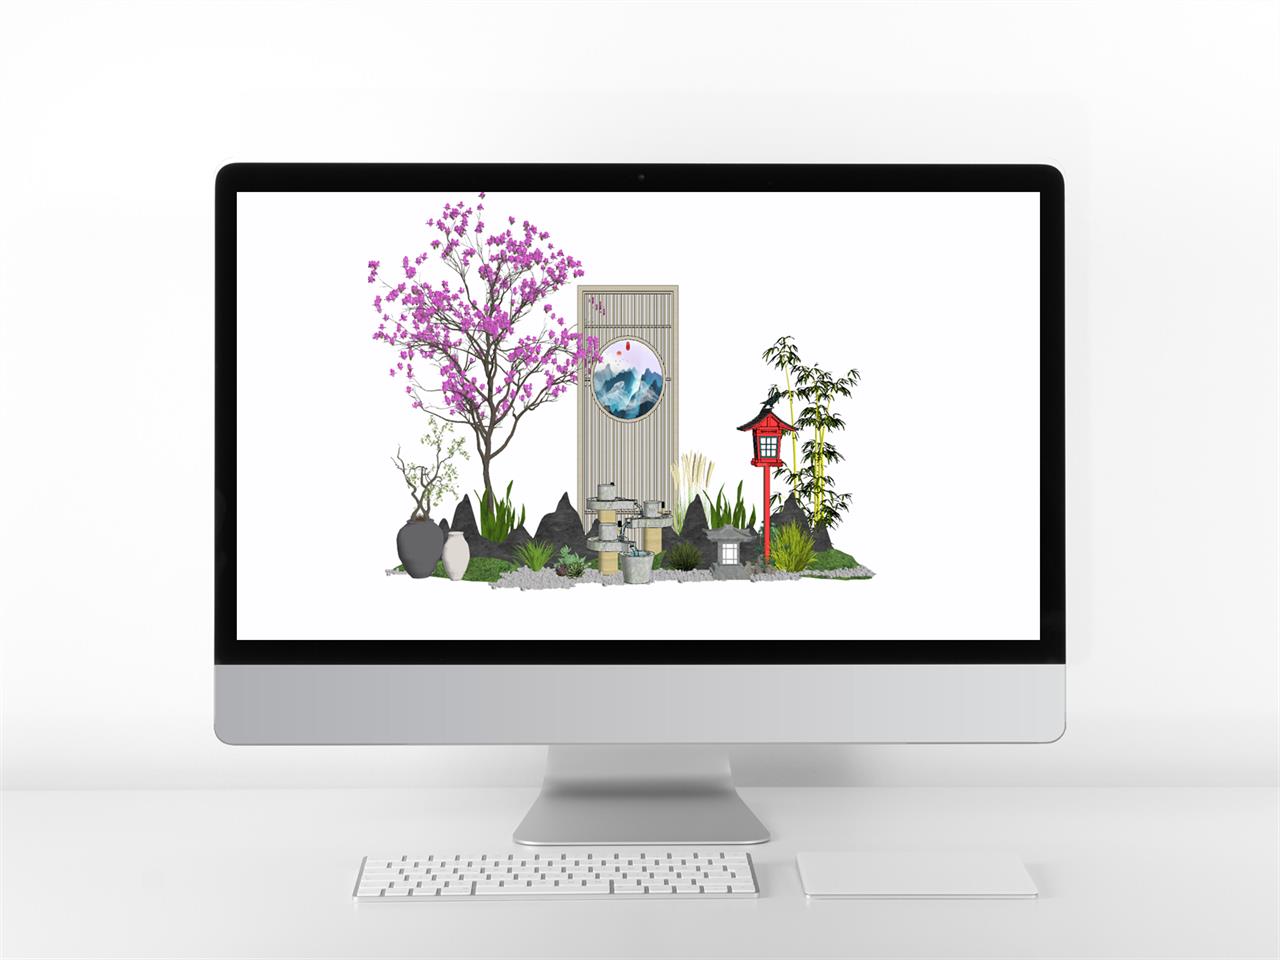 단조로운 정원조경 환경 Sketchup 모델 디자인 미리보기